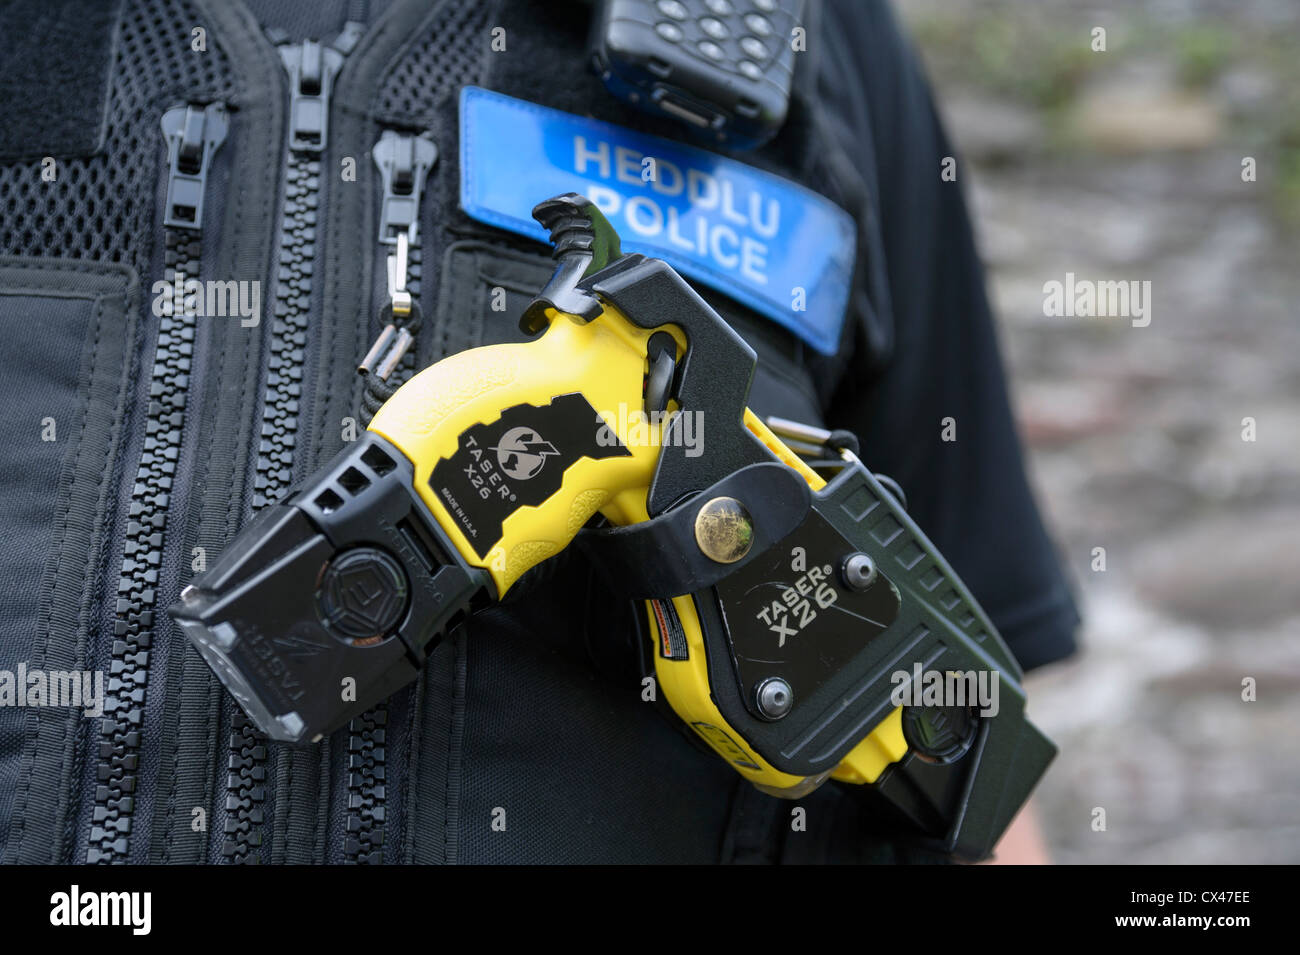 La polizia taser x26 Pistola stun, Abergavenny, Wales, Regno Unito. Foto Stock